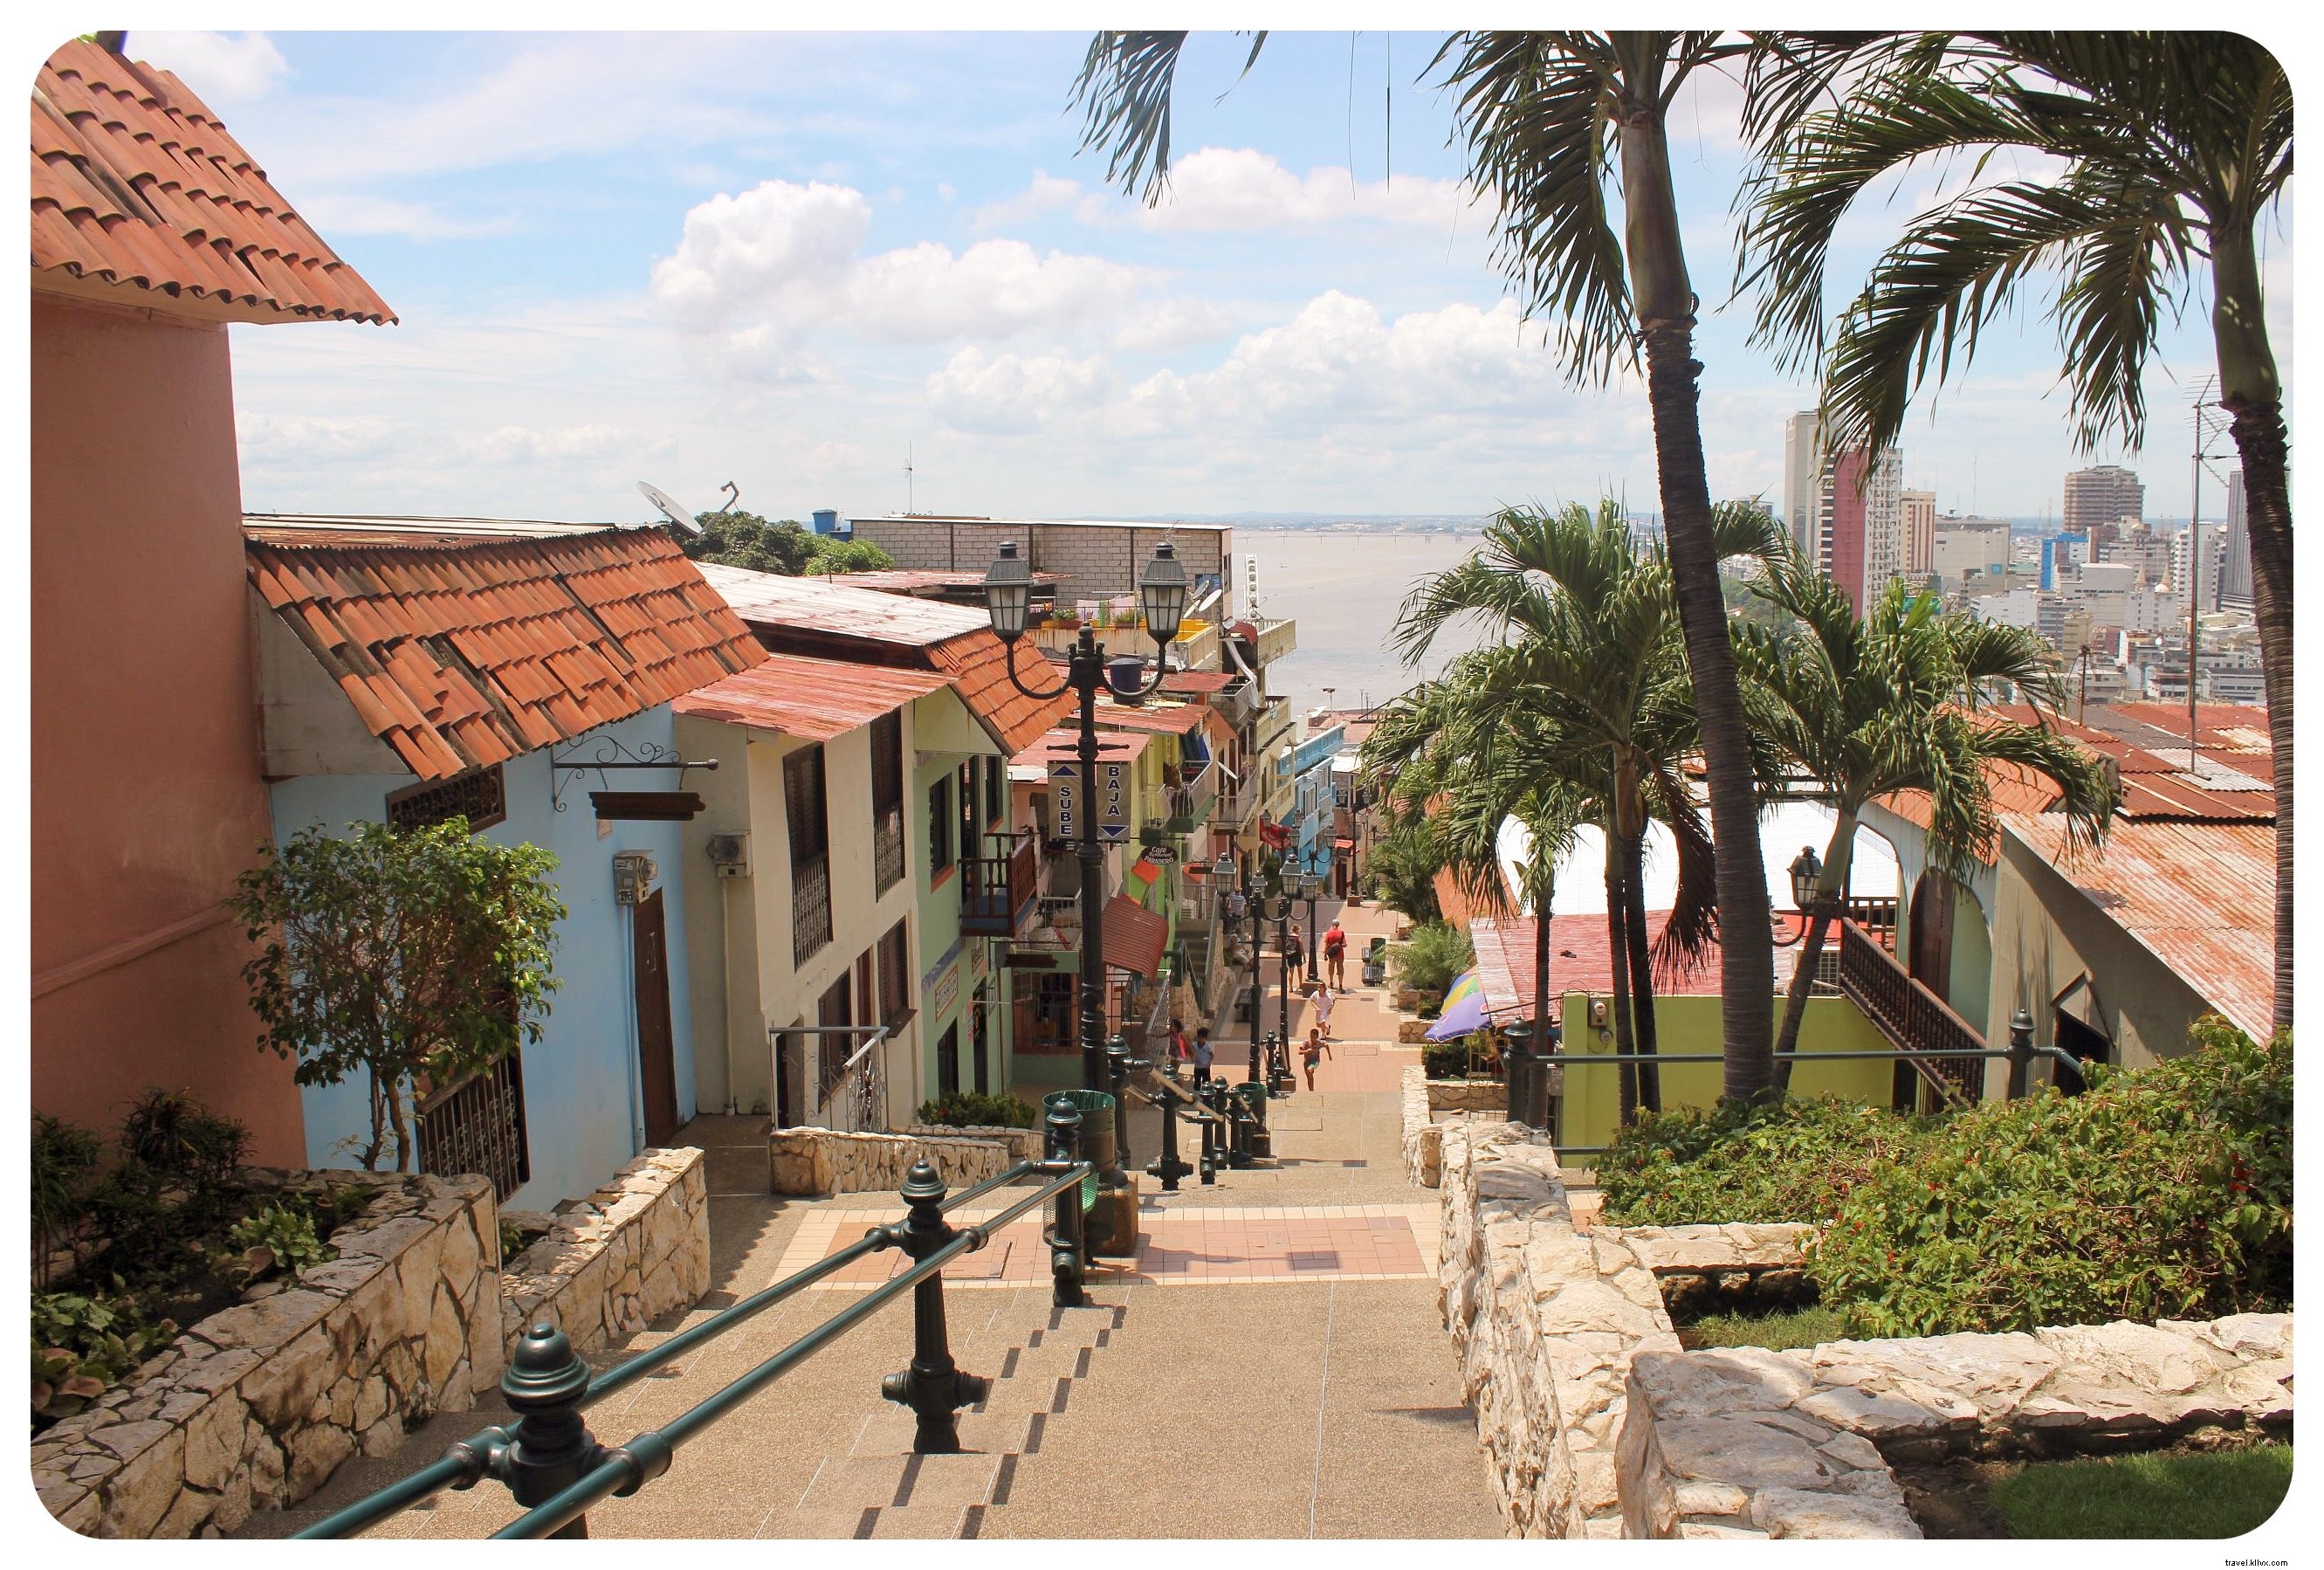 Comment les iguanes ont sauvé Guayaquil pour moi